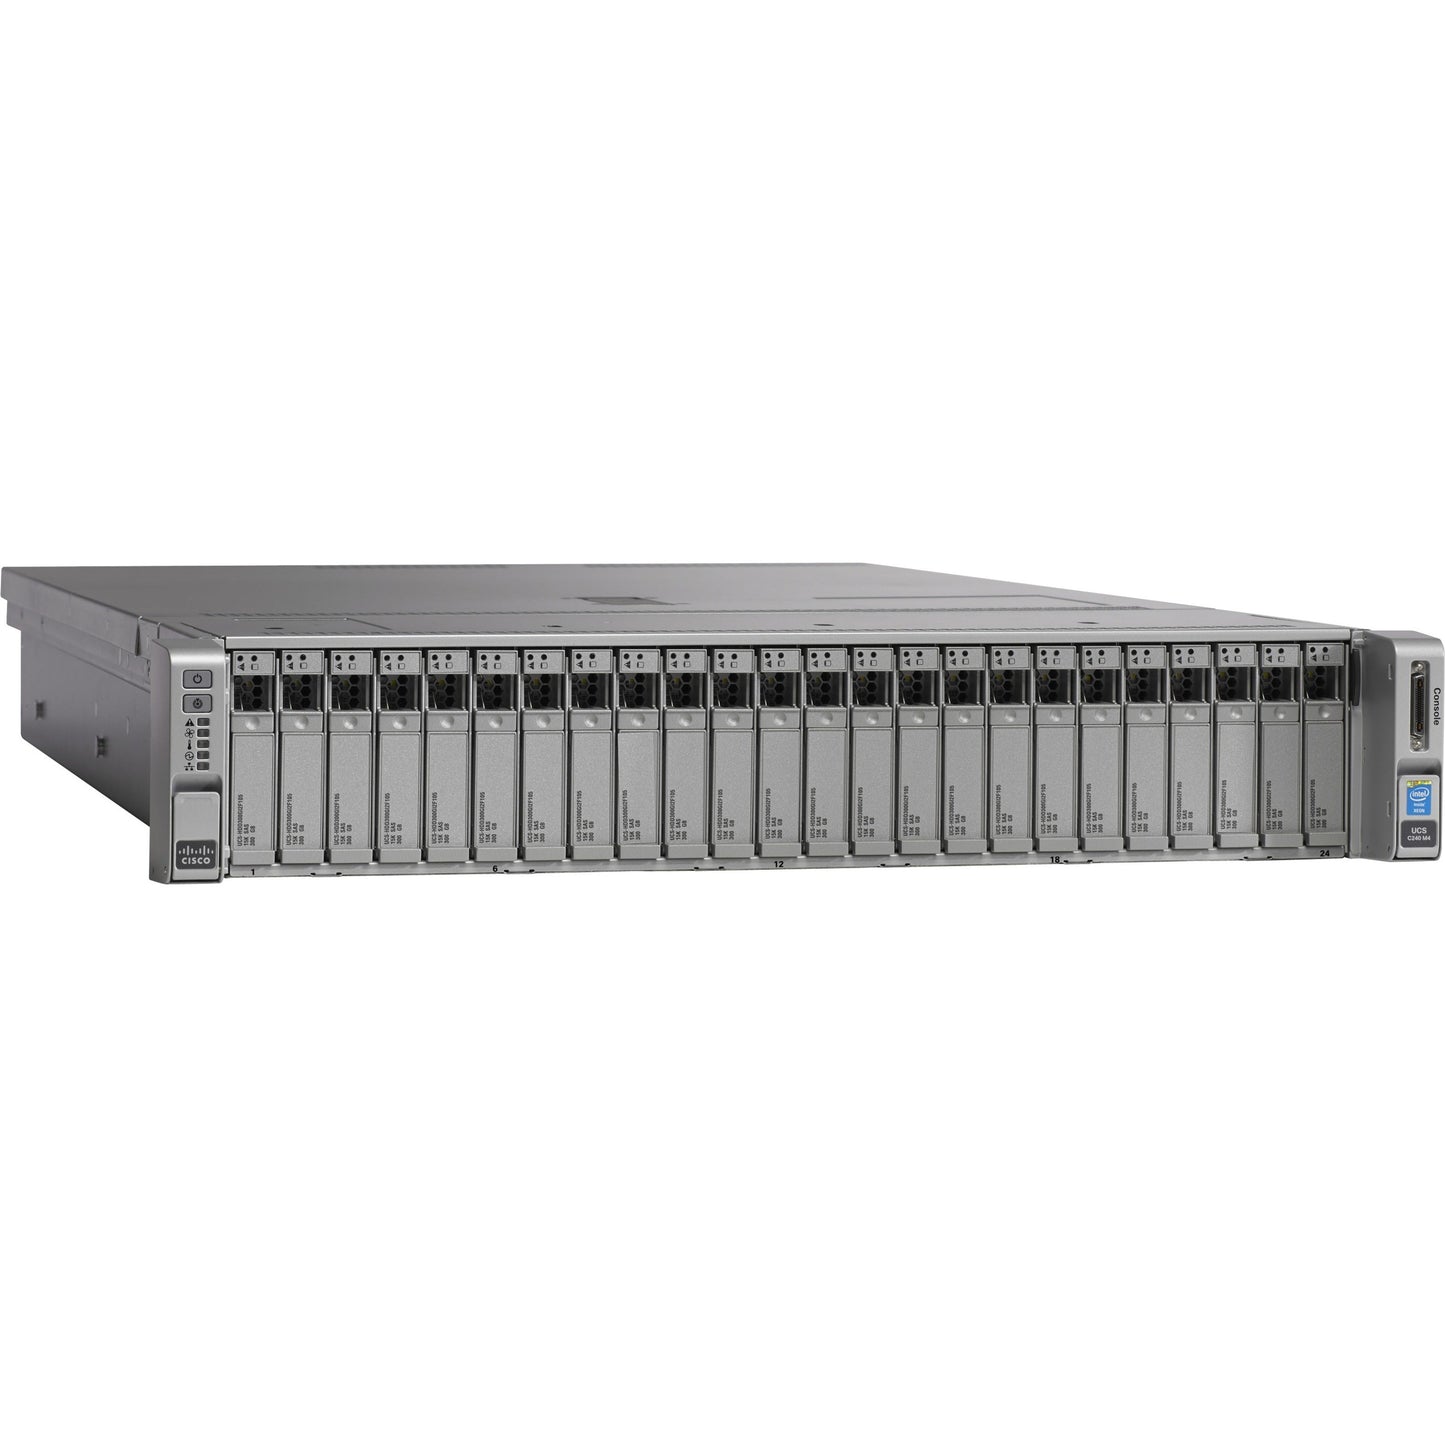 Cisco C240 M4 2U Rack Server - Intel Xeon E5-2620 v3 2.40 GHz - 128 GB RAM - Serial ATA Controller